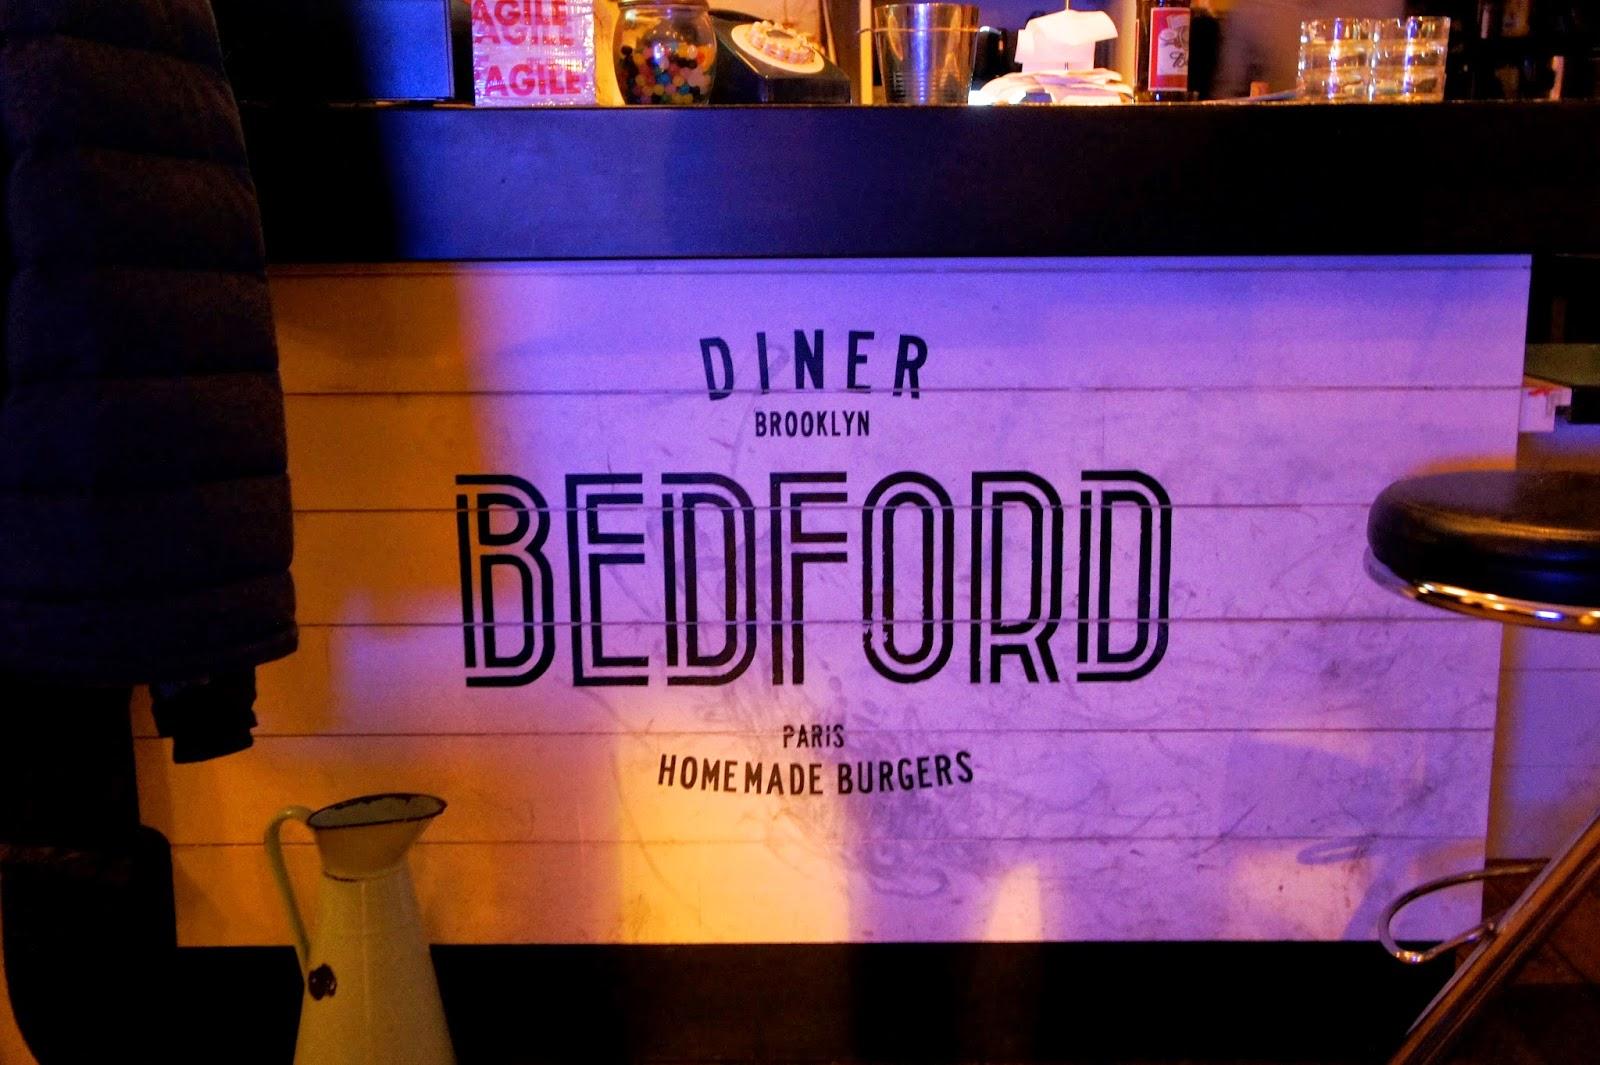 Diner Bedford